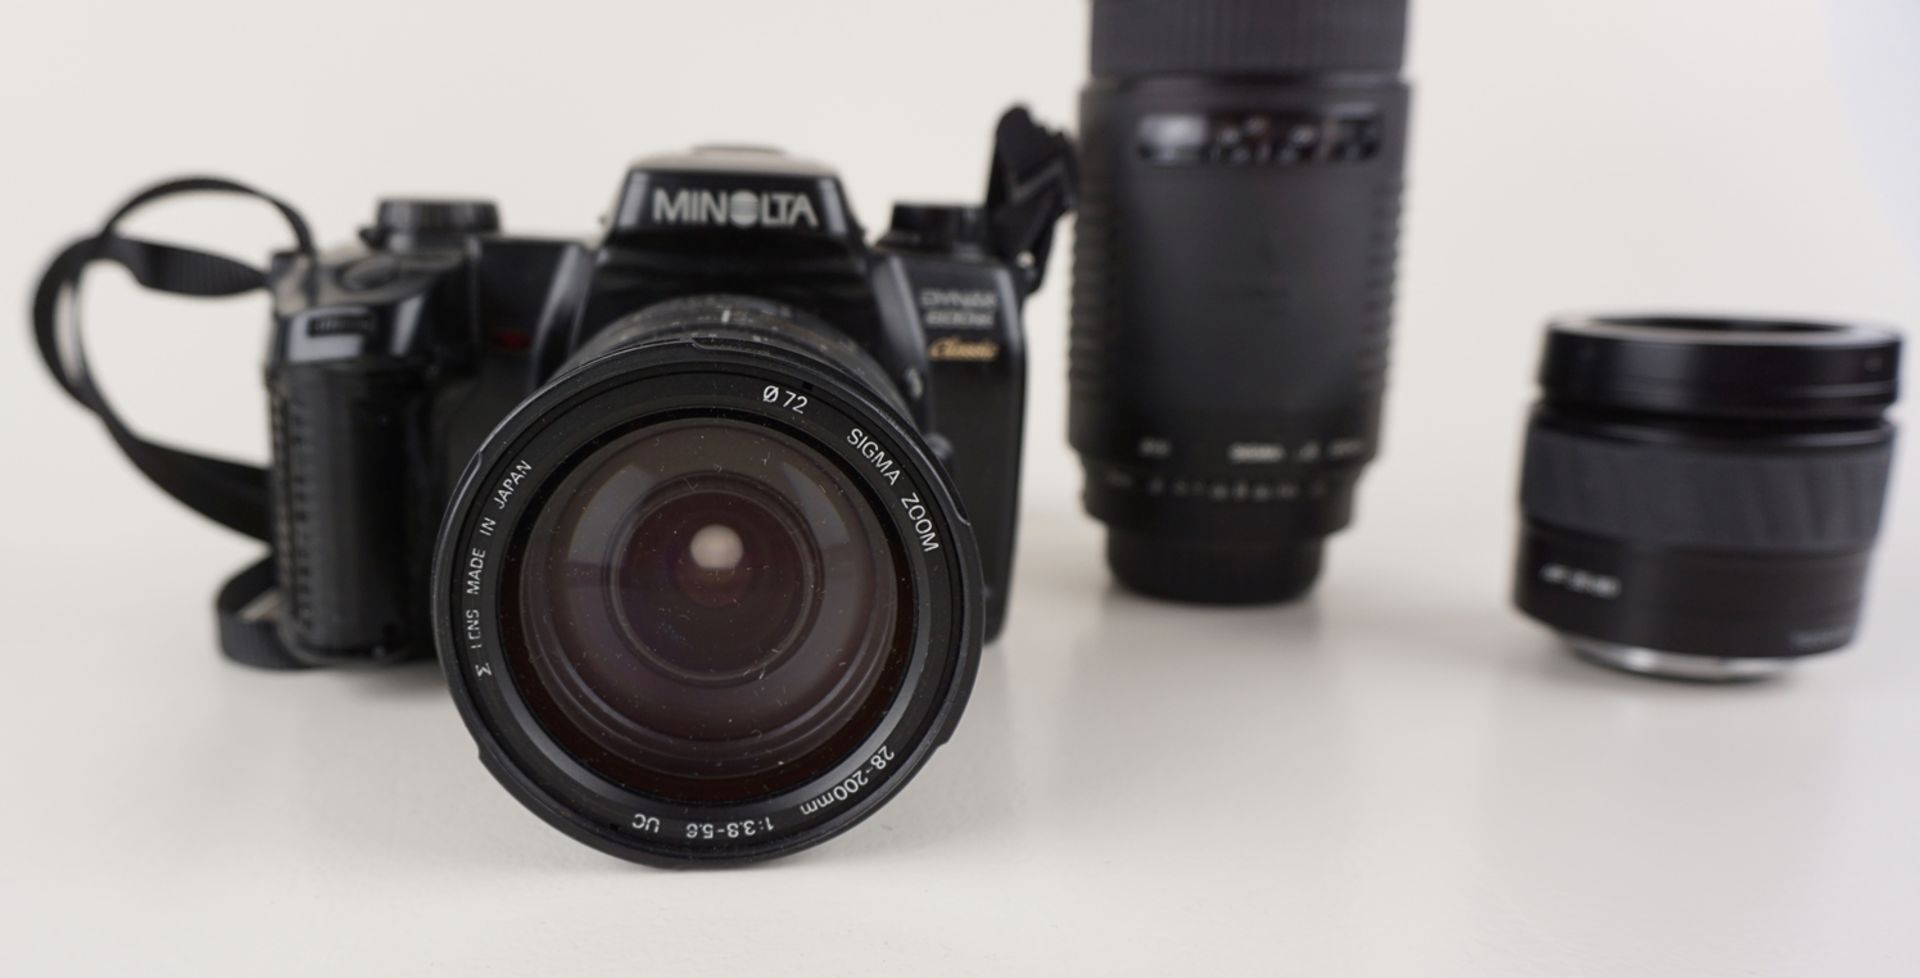 Spiegelreflexkamera Minolta Dynax 600si mit 3 Objektiven - Bild 2 aus 2